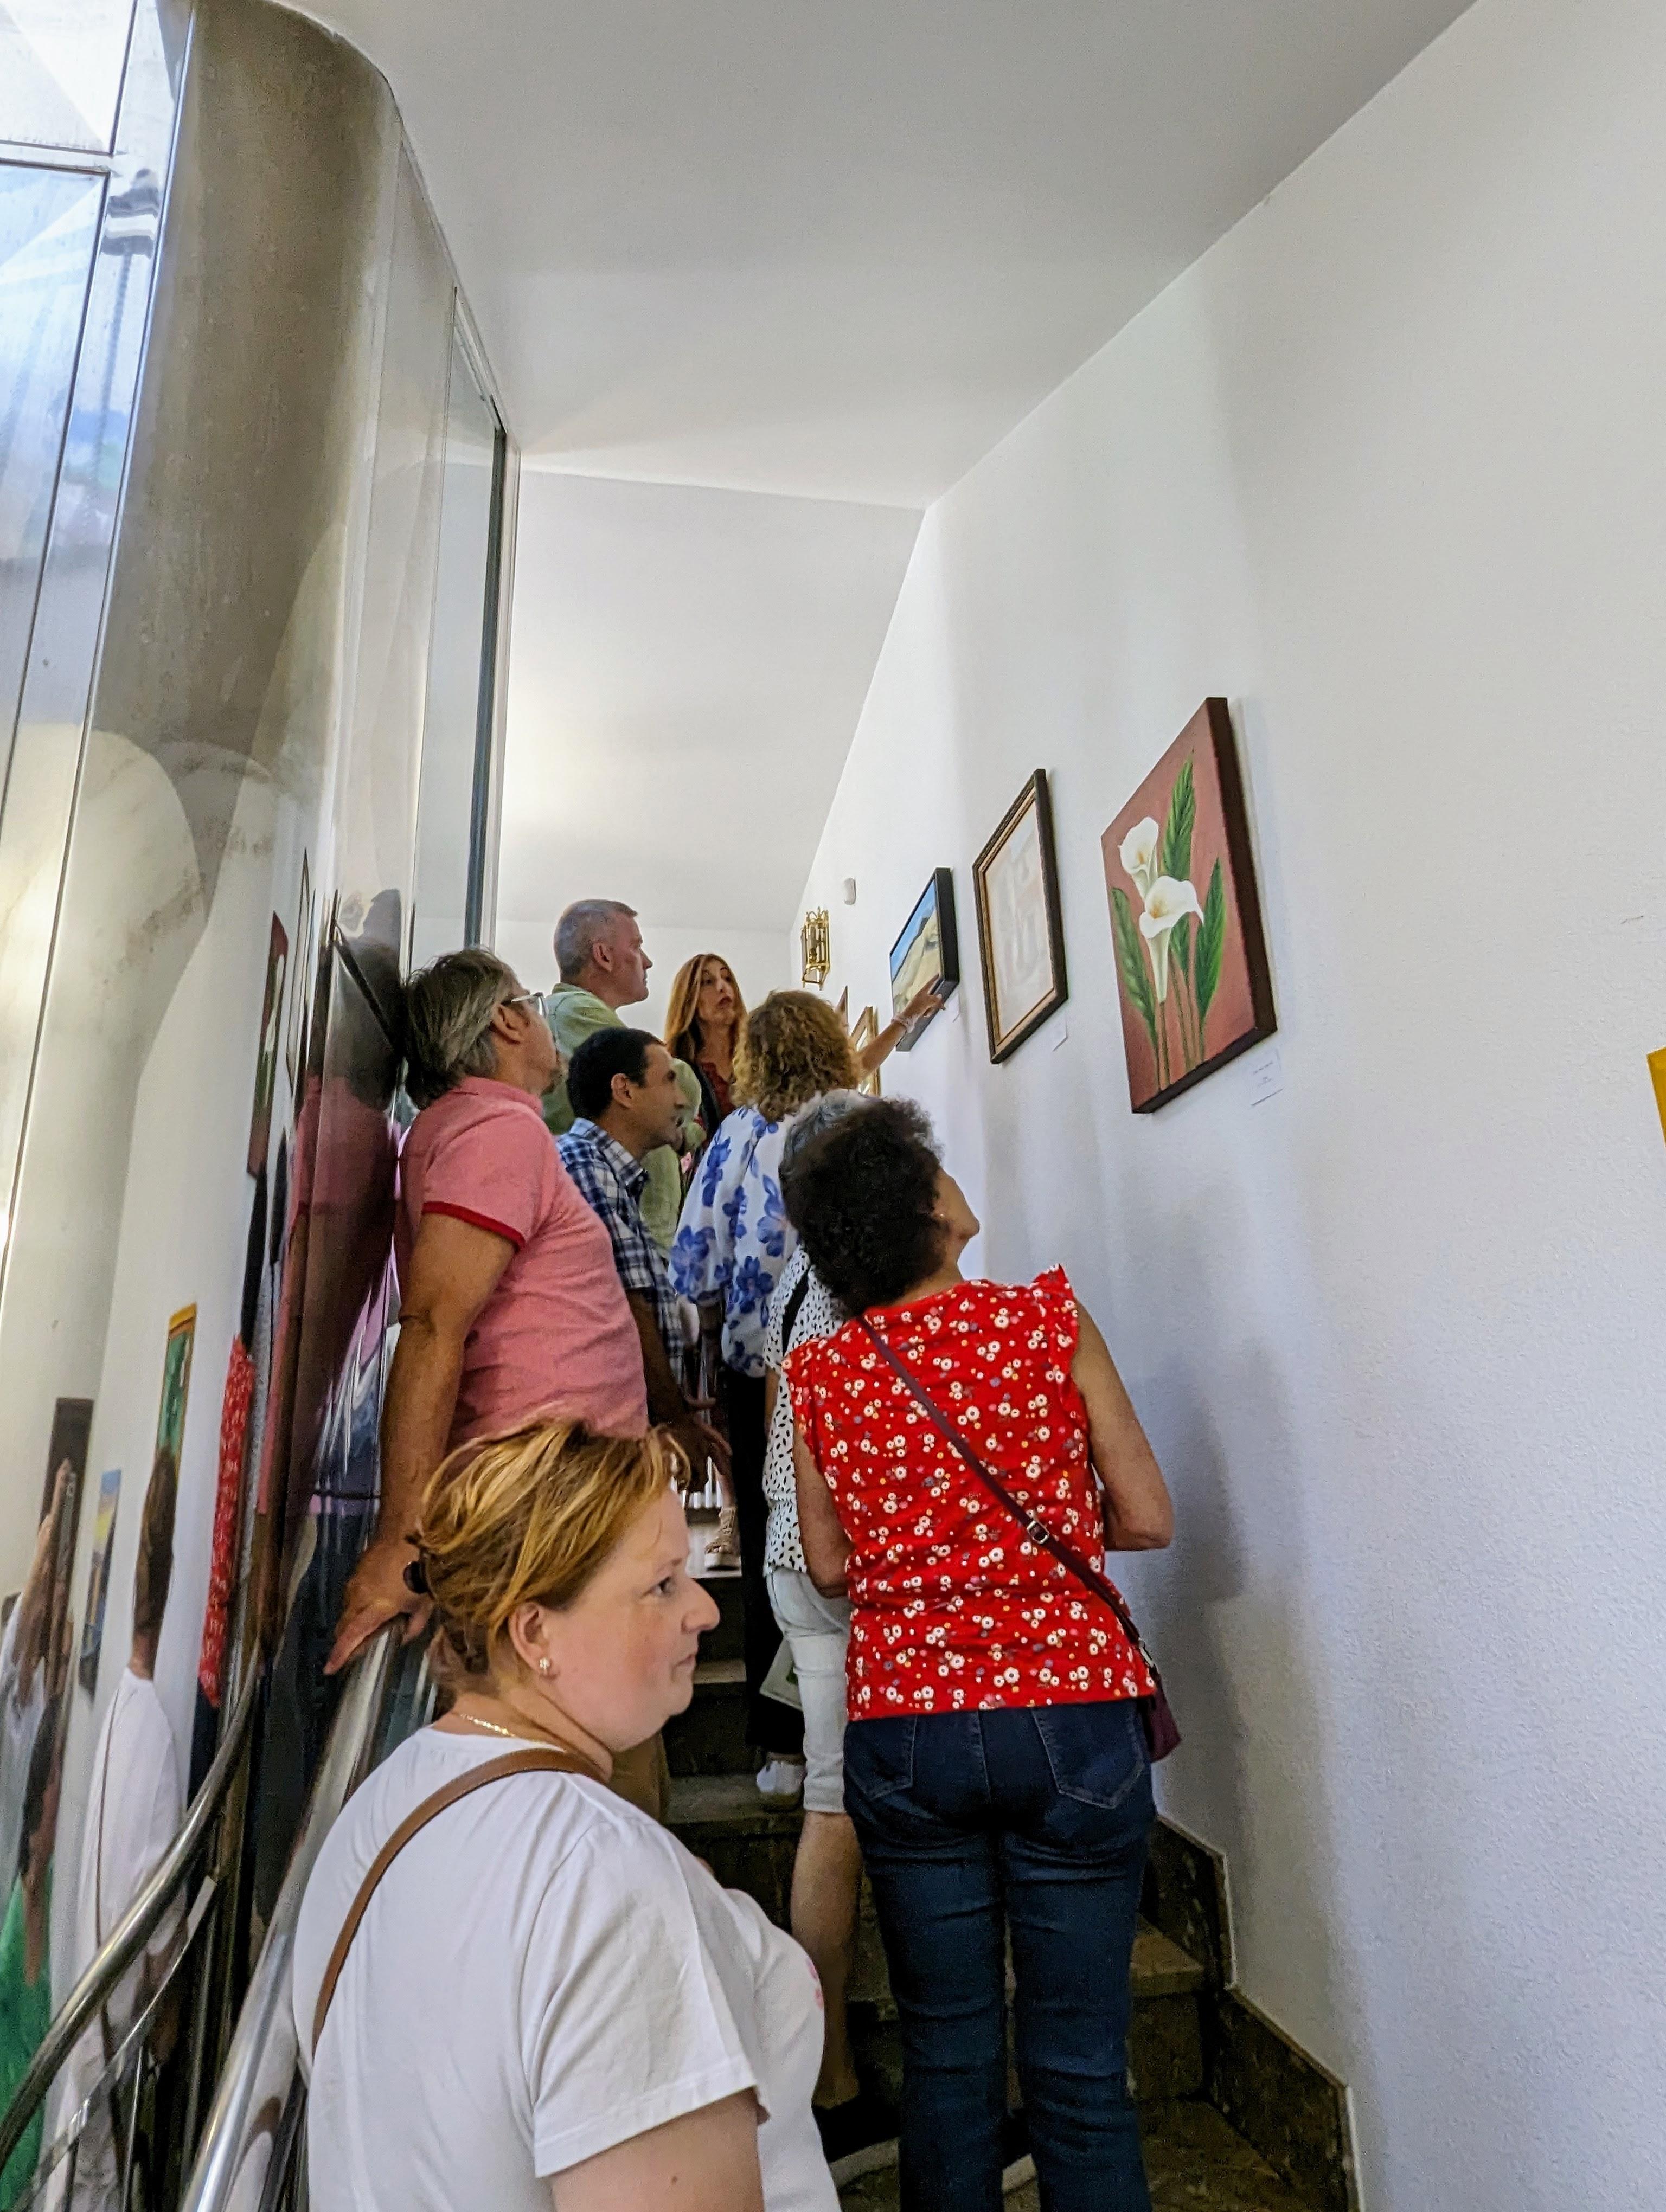 Hoxe inauguramos a exposición de pintura d@s alumn@s da Mestra EVA DOMÍNGUEZ